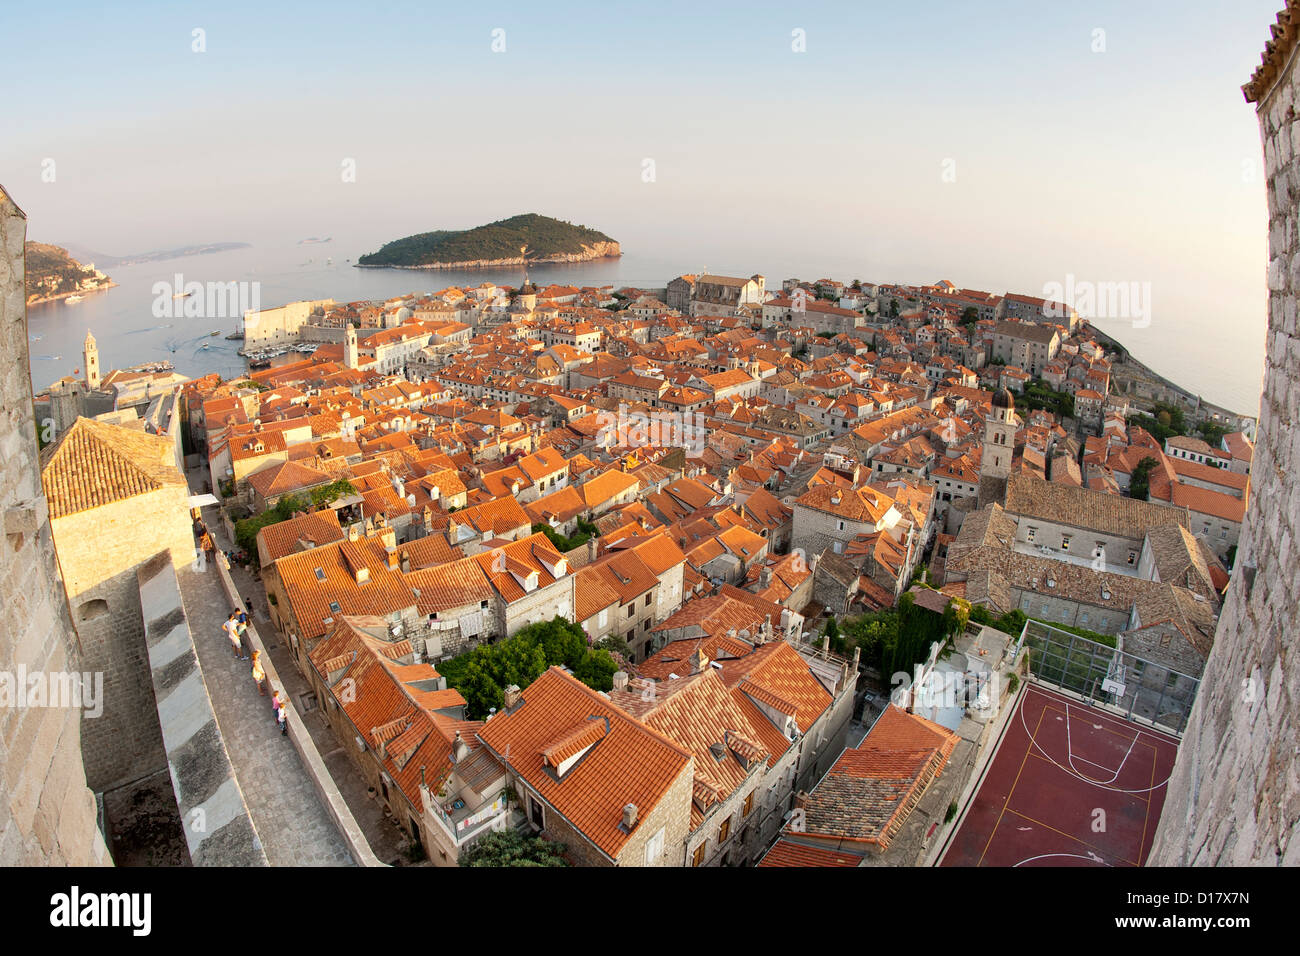 Blick über die Dächer der Altstadt in der Stadt von Dubrovnik an der Adria Küste in Kroatien. Insel Lokrum ist auch sichtbar. Stockfoto